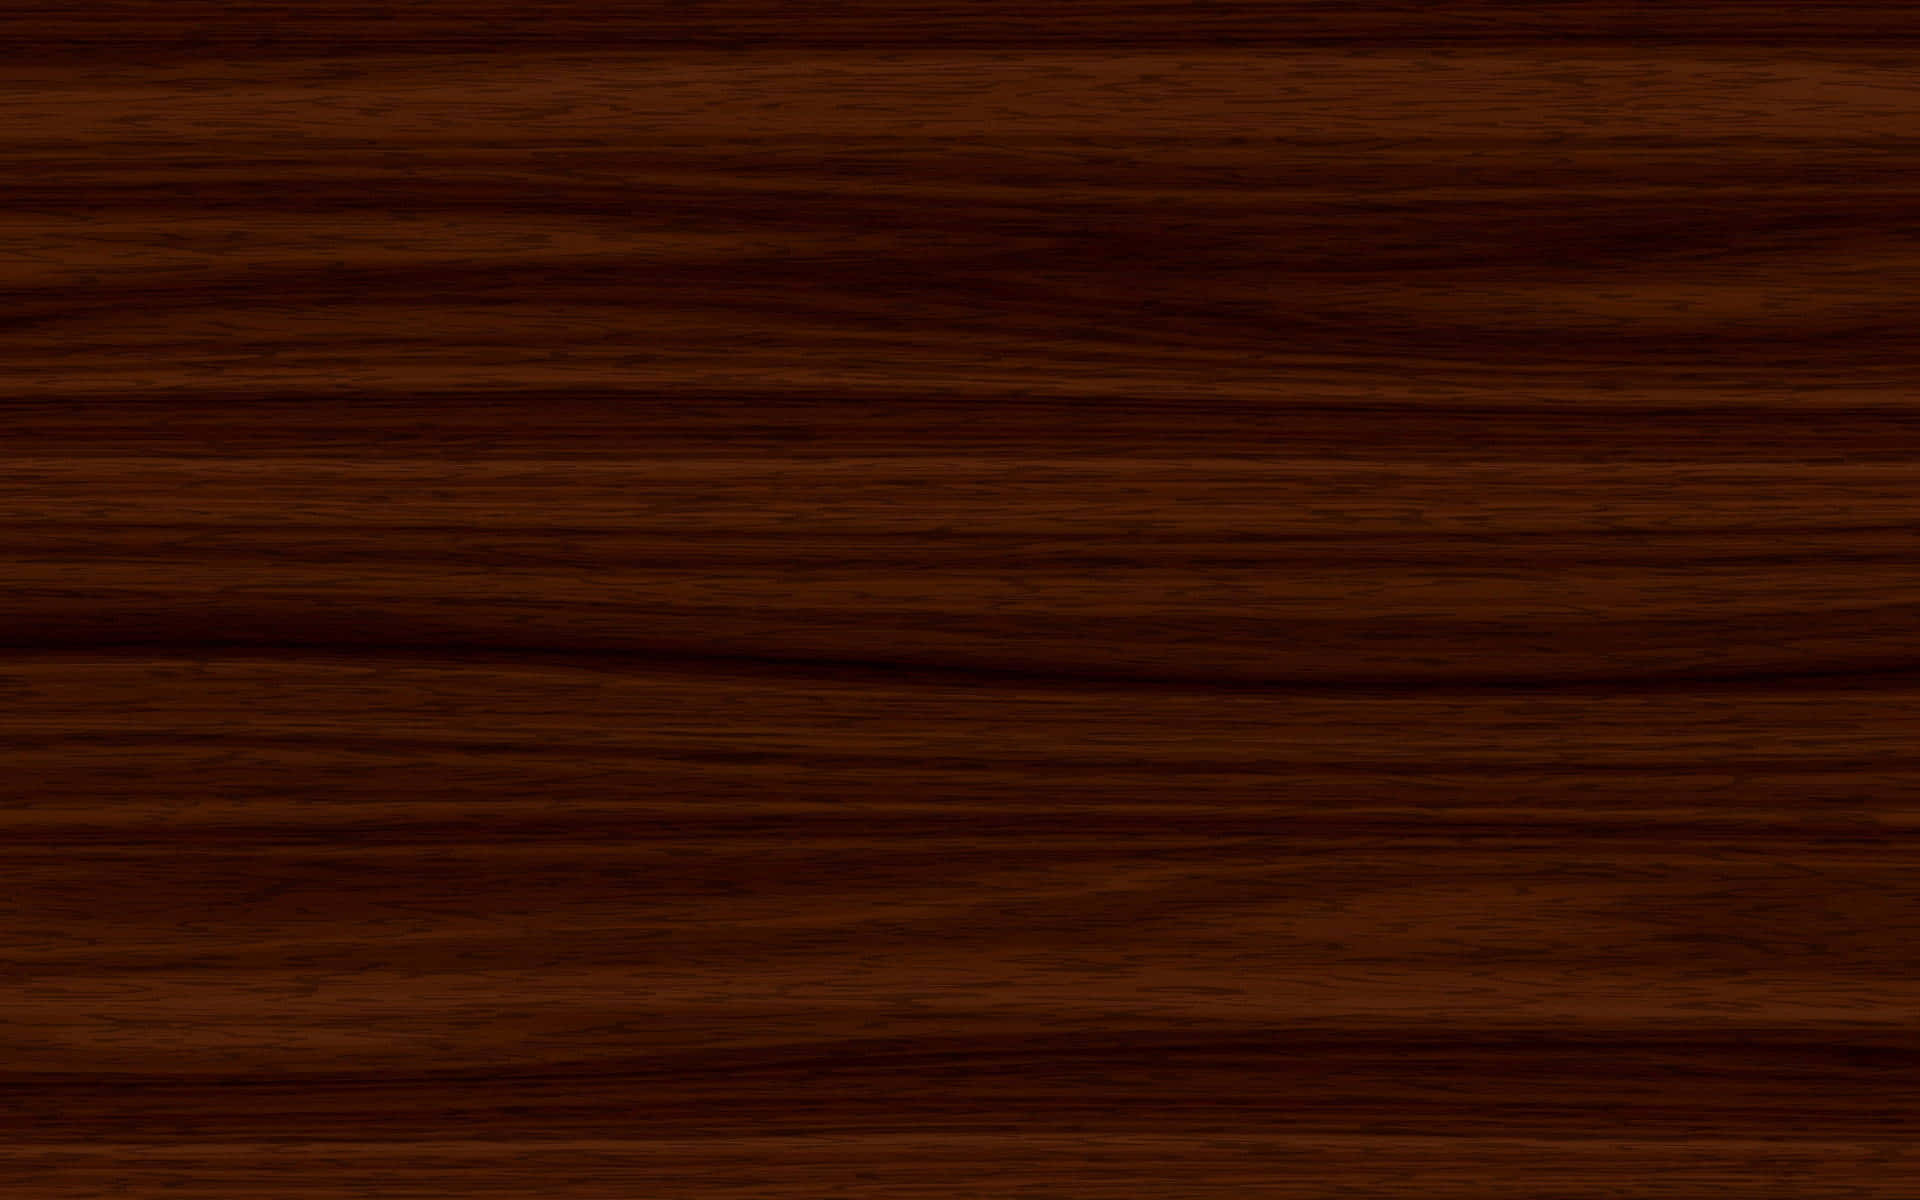 Warm Walnut Wood Texture Wallpaper